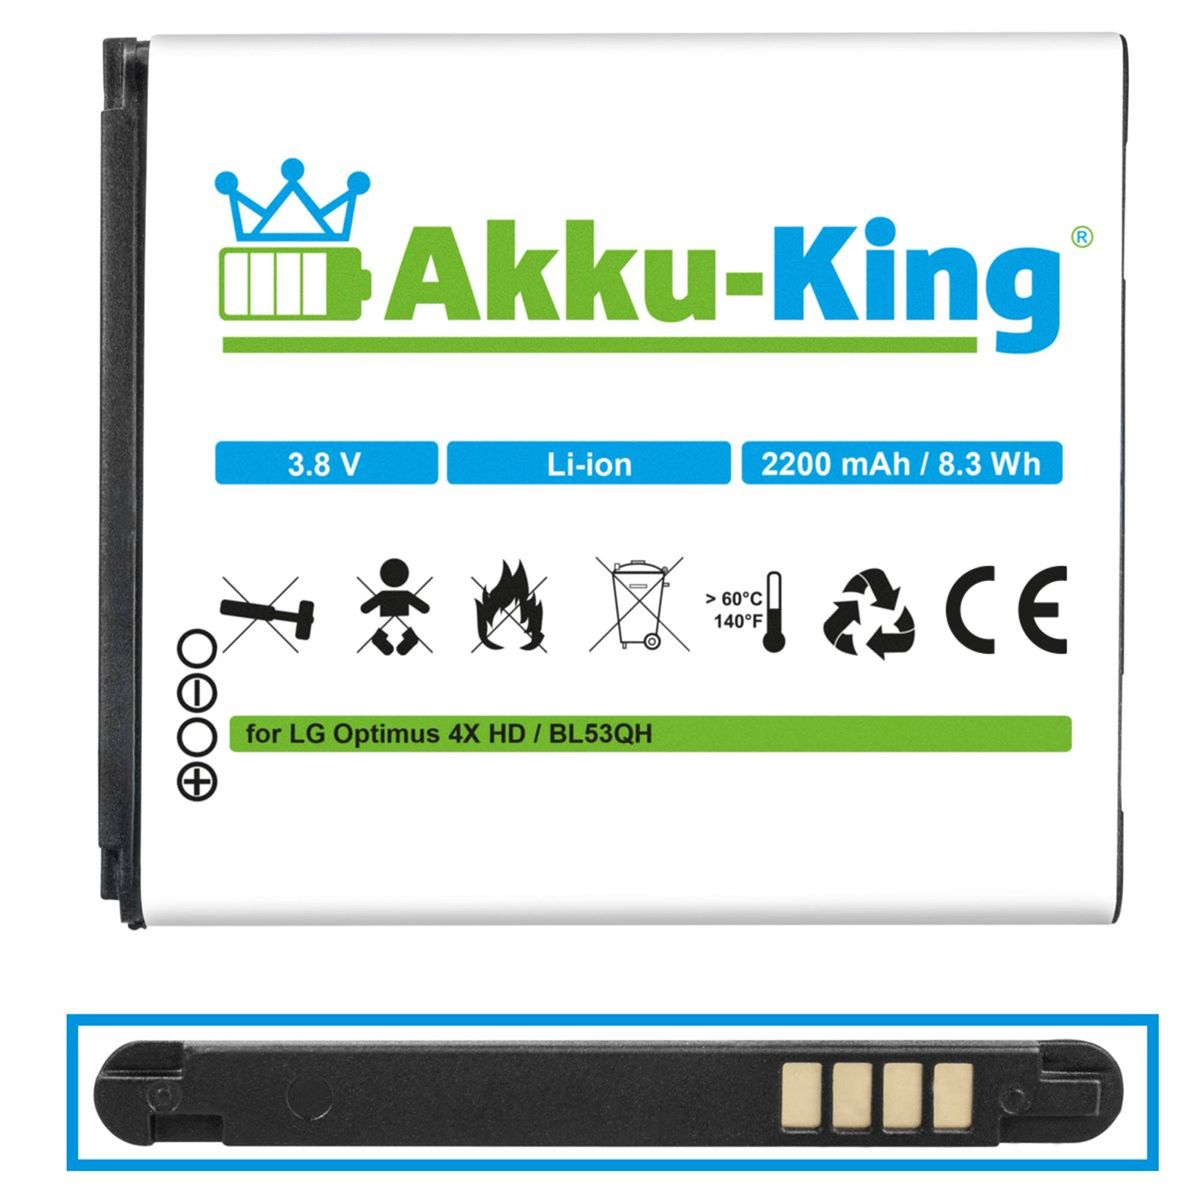 Akku BL-53QH Handy-Akku, kompatibel 2200mAh Volt, 3.8 mit LG AKKU-KING Li-Ion